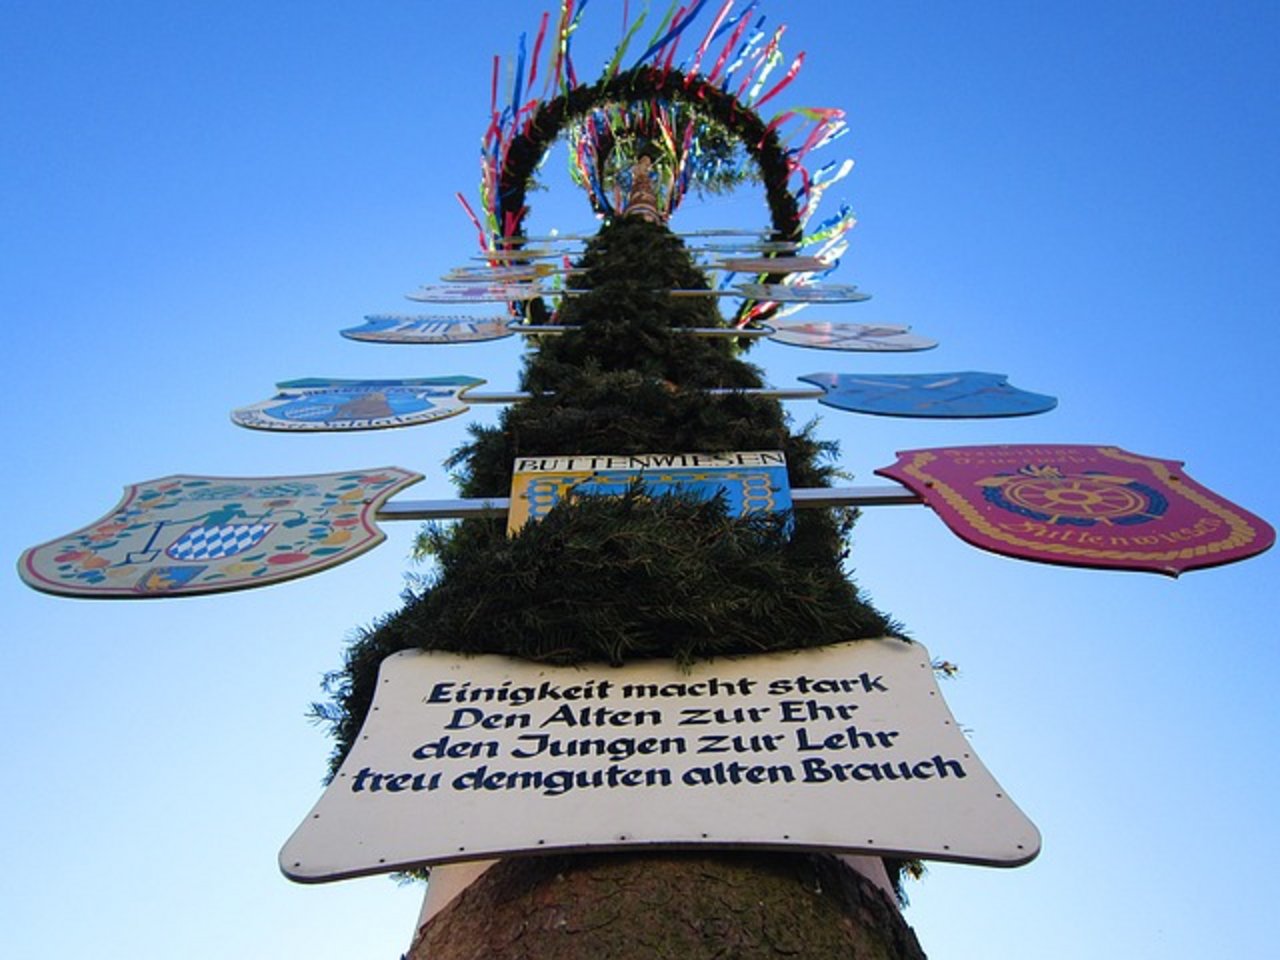 Maibaum-Feste sind eine deutsche Tradition. Offenbar eine gefährliche. (Bild Pixabay)